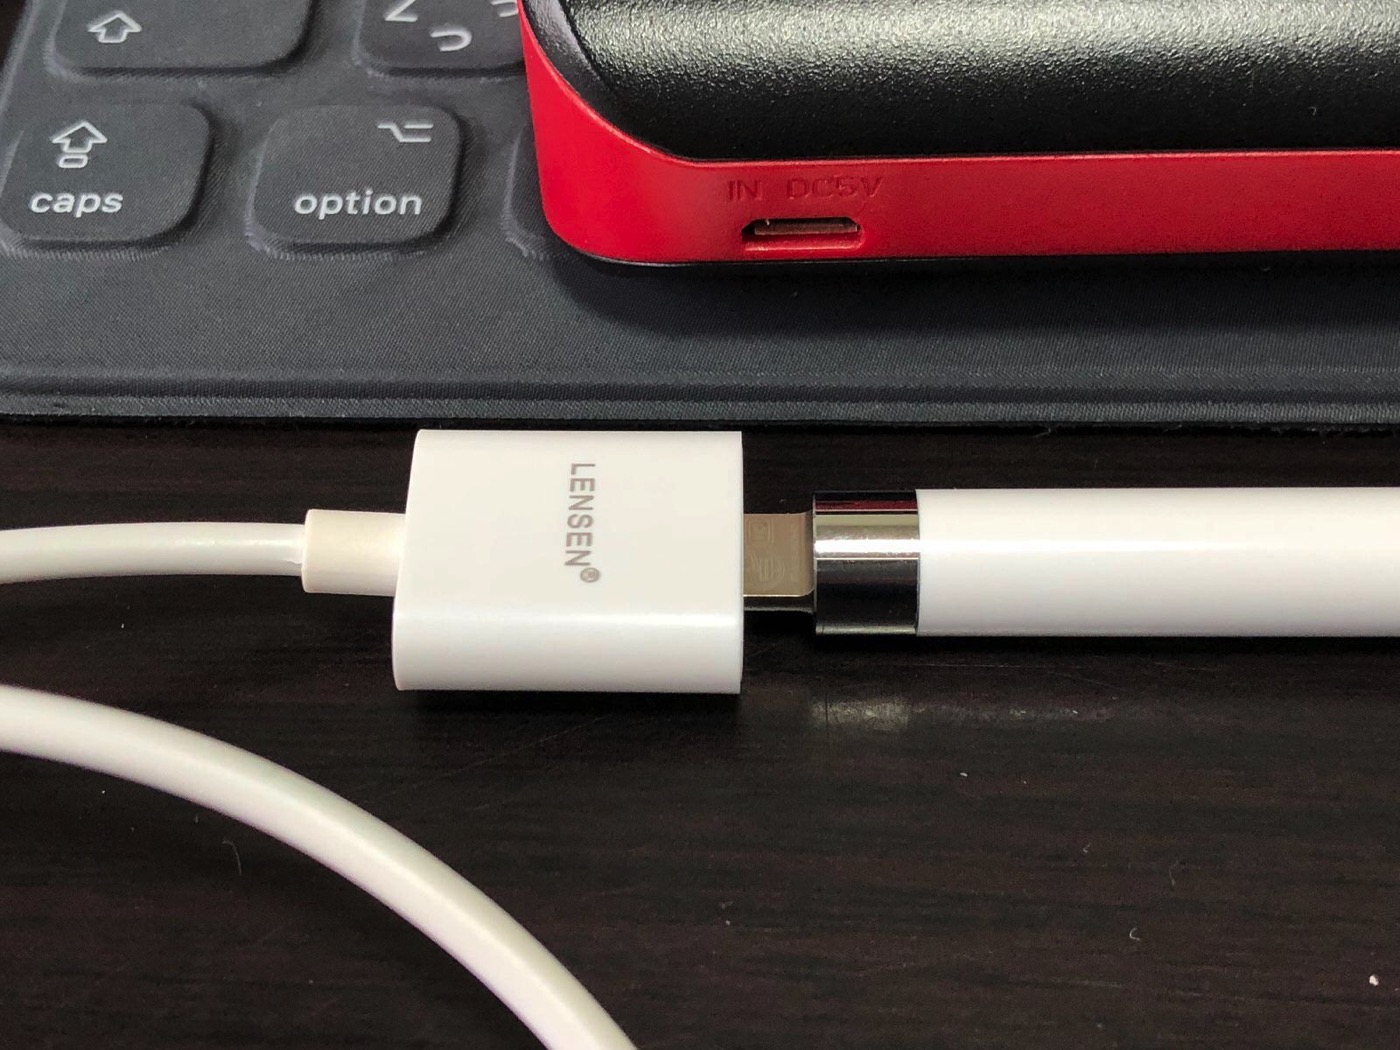 ［Amazon］注文していた「Apple Pencil 充電 ケーブル オス to メス 0.5m アップル ペンシル キャップ カバー」が届いたので早速開封してみたよ-7